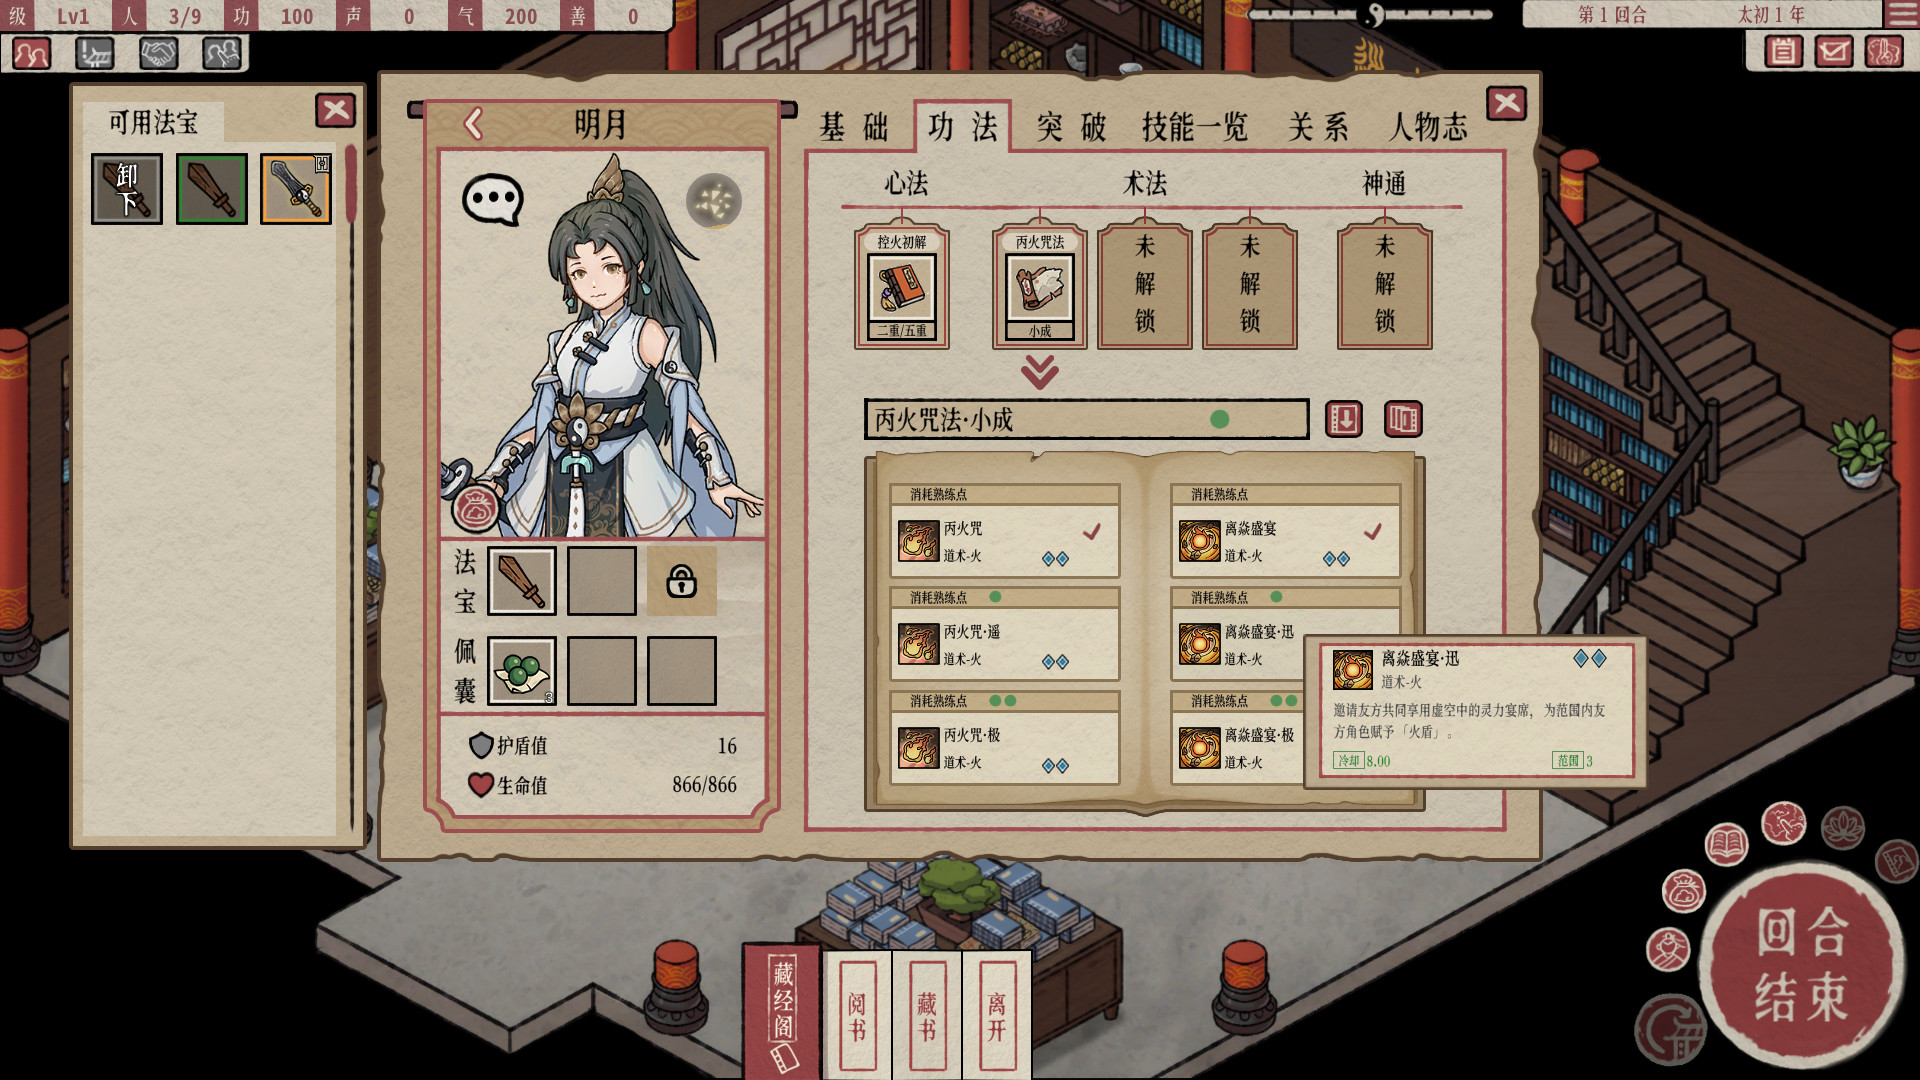 中國古神話世界背景戰棋回合制遊戲《天地歸虛》上架Steam商店頁面